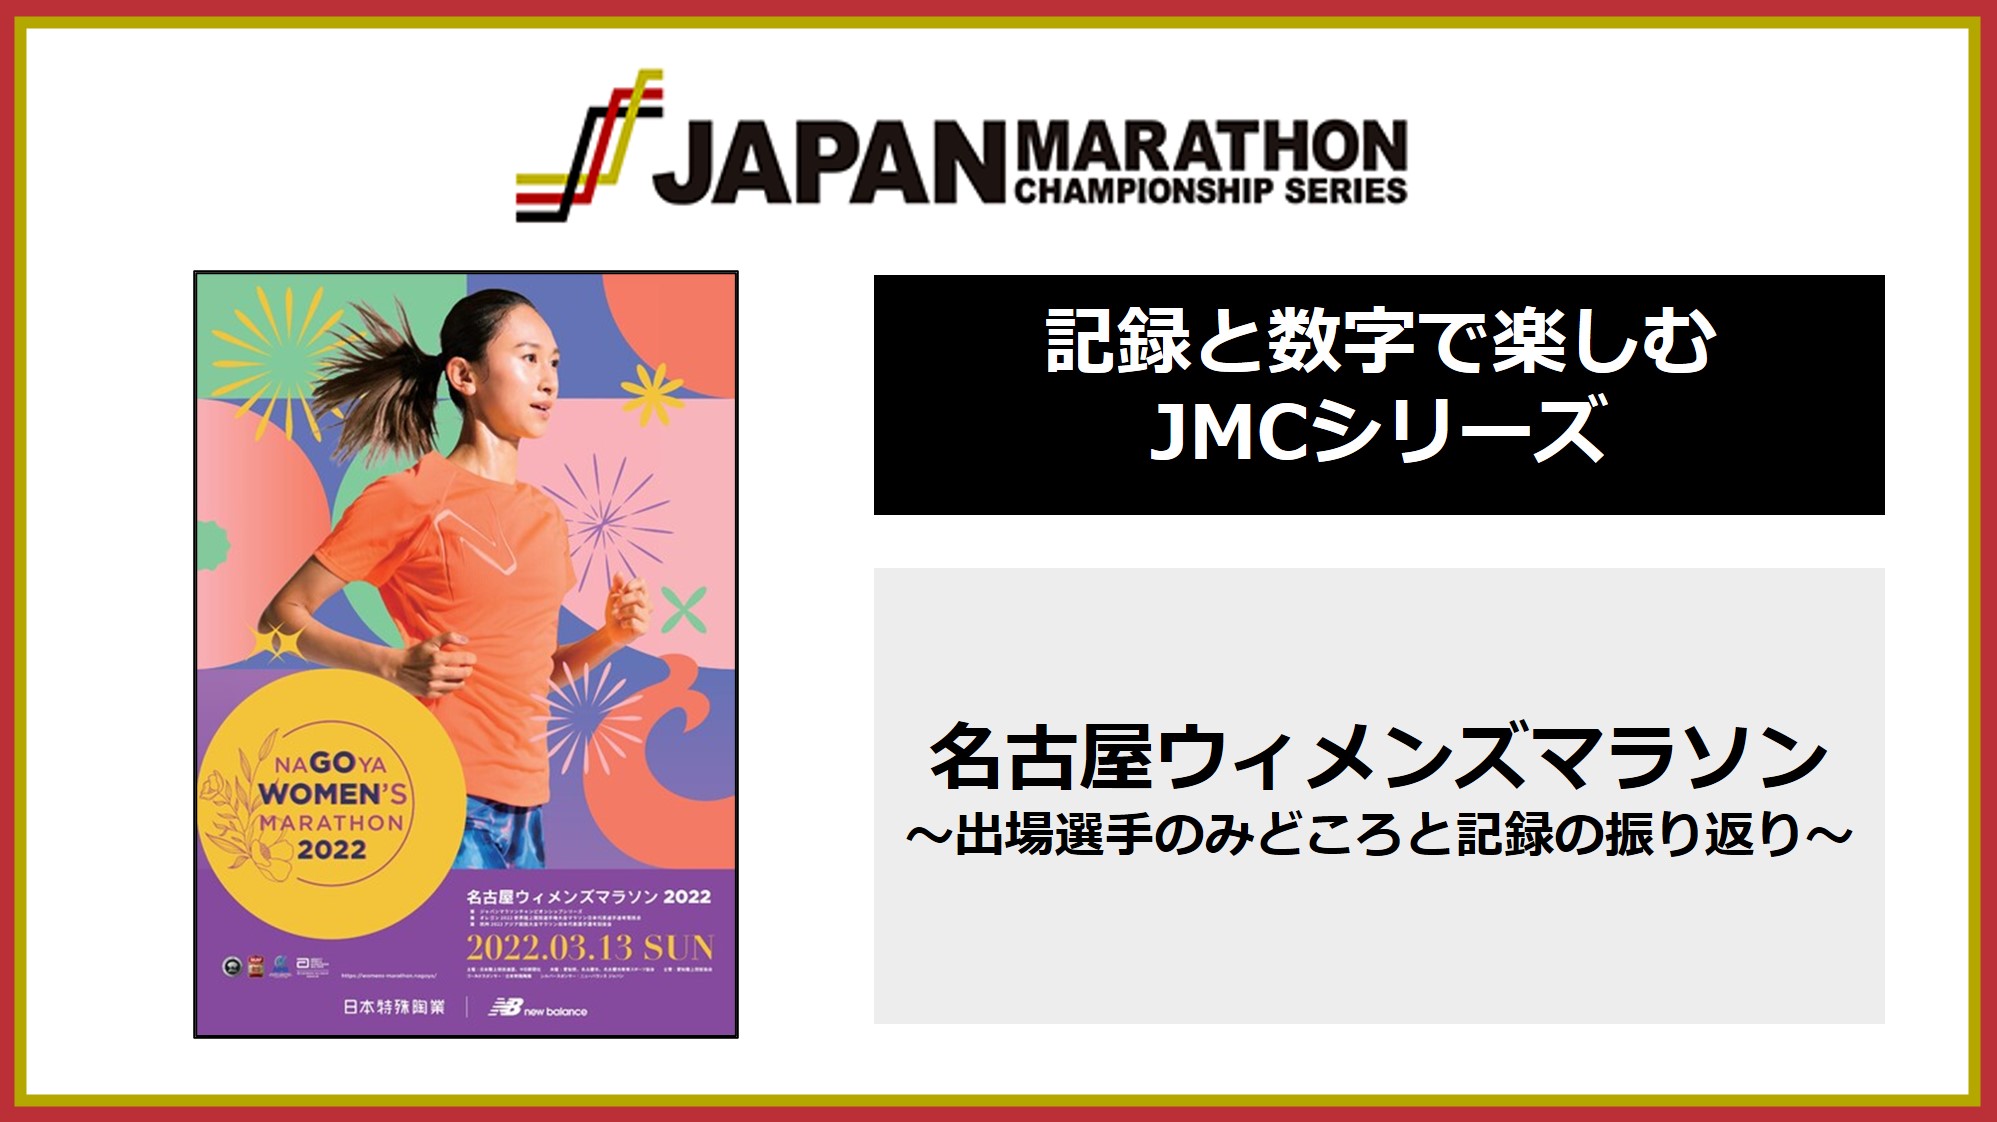 名古屋ウィメンズマラソン2022 ～ジャパンマラソンチャンピオンシップ 